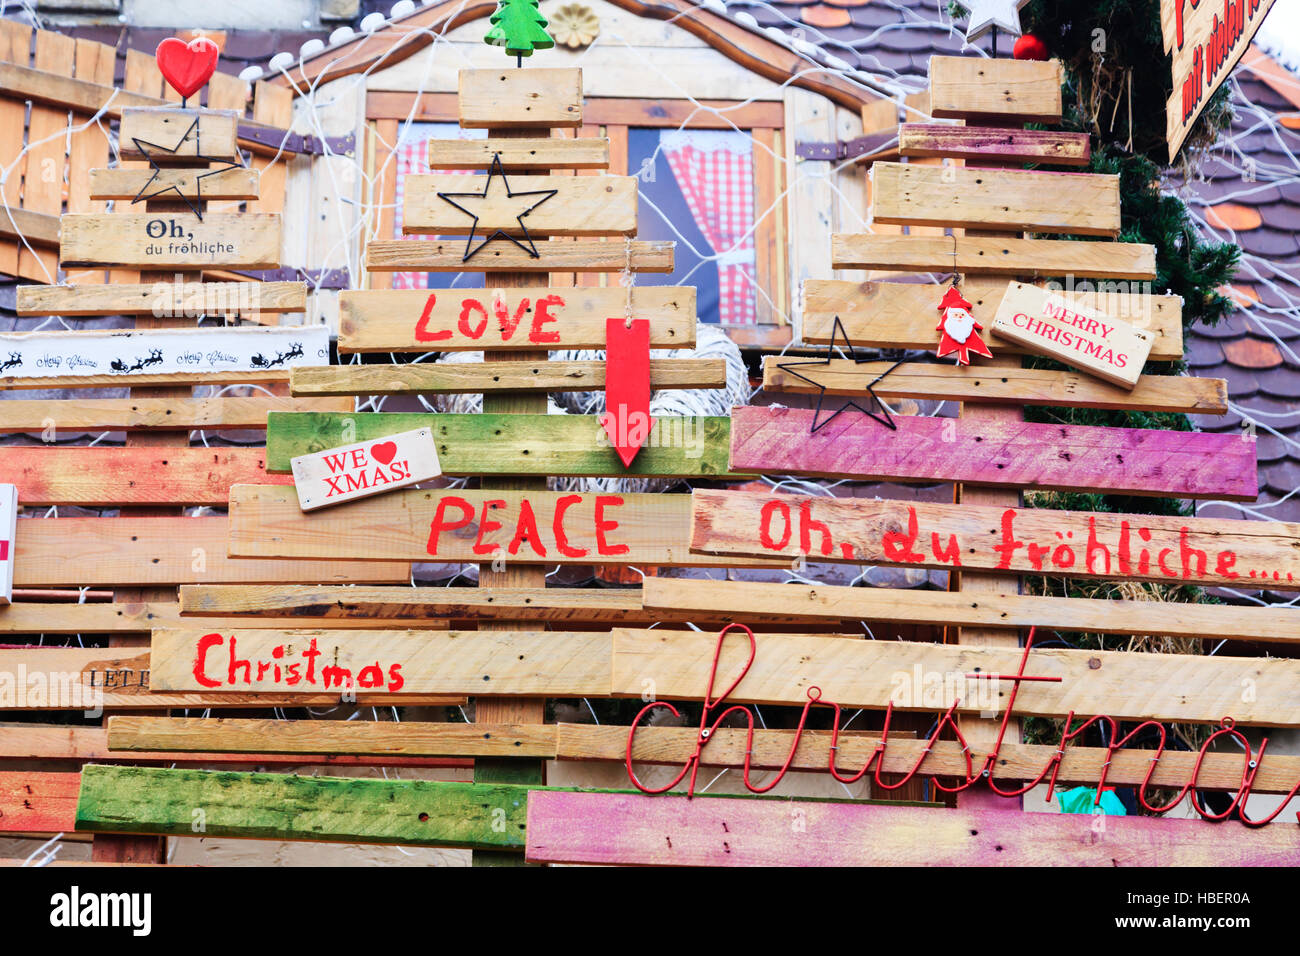 Messaggi di natale in tedesco e in inglese, Bremen Mercatini di Natale 2016 Foto Stock